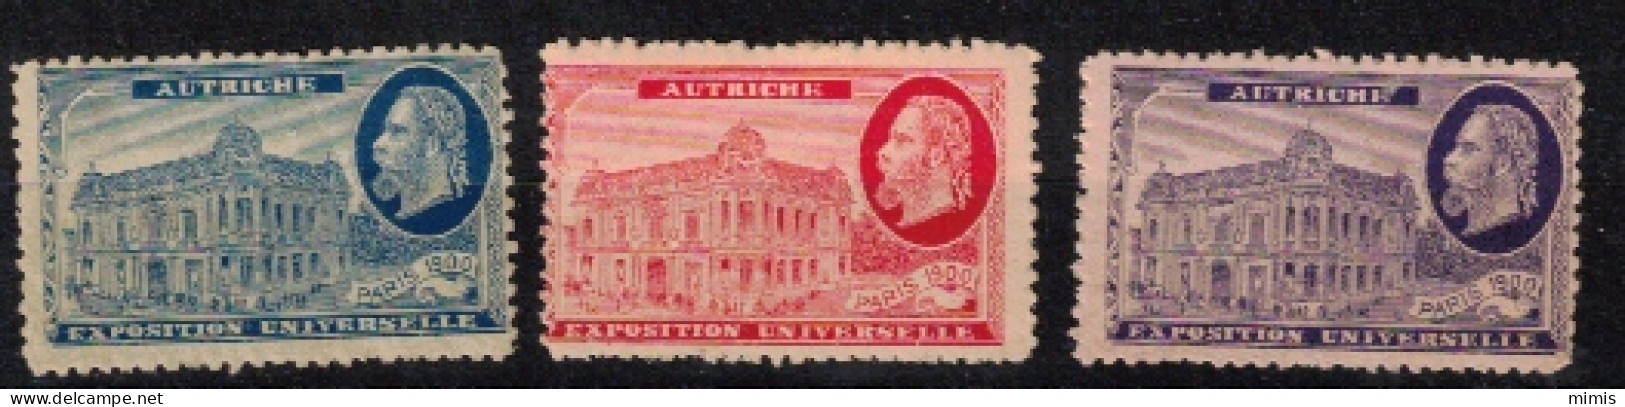 FRANCE     VIGNETTES      Exposition Universelle Paris 1900     Autriche - Tourism (Labels)